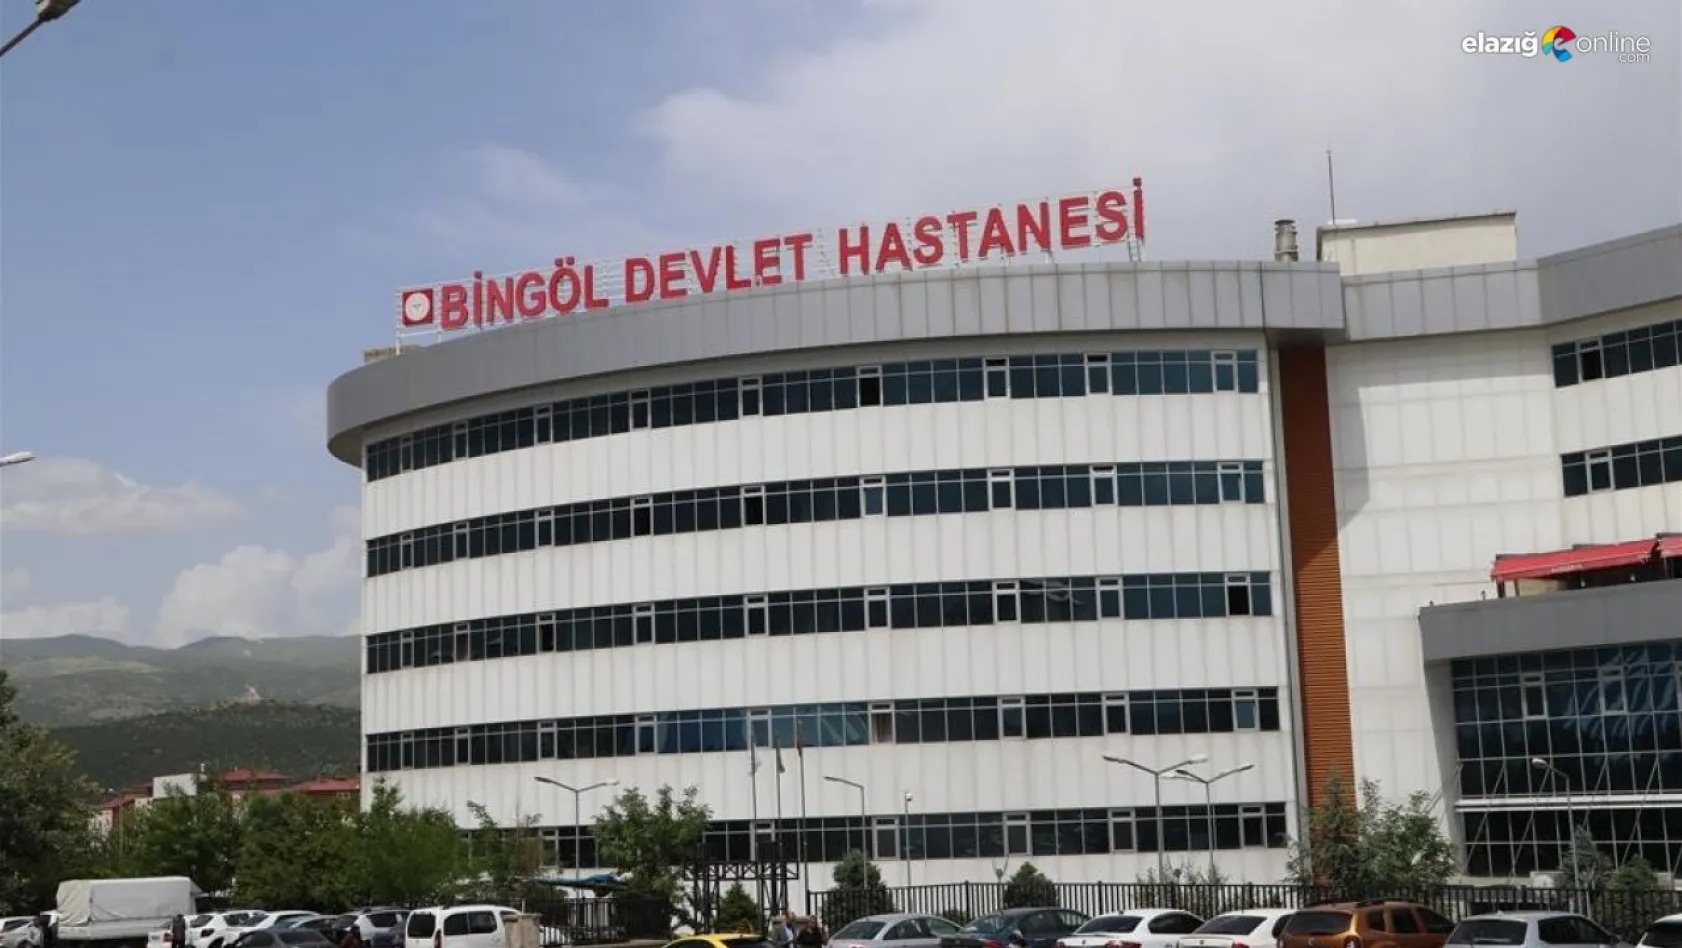 Bingöl Devlet Hastanesinde 3 branş daha eklendi